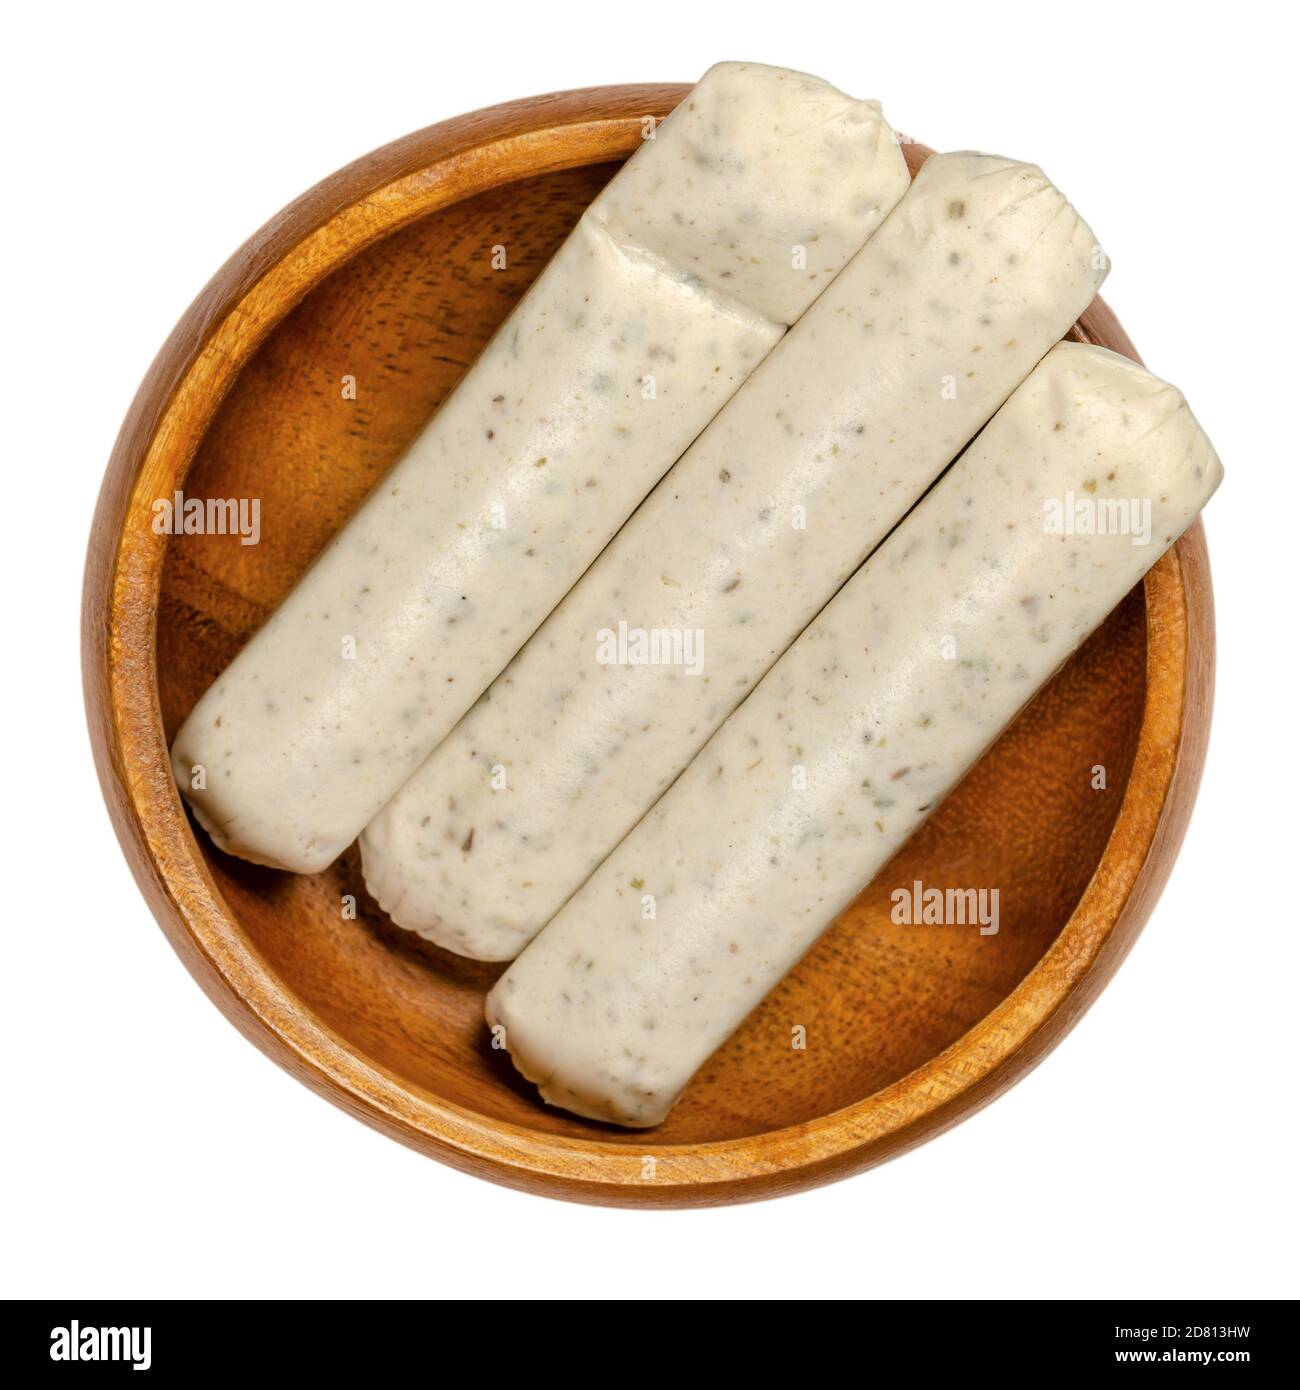 Salchichas vegetarianas a la barbacoa en un cuenco de madera. Salchichas blancas sin carne hechas de huevo y proteína de leche como sustituto de carne, con hierbas y especias. Foto de stock